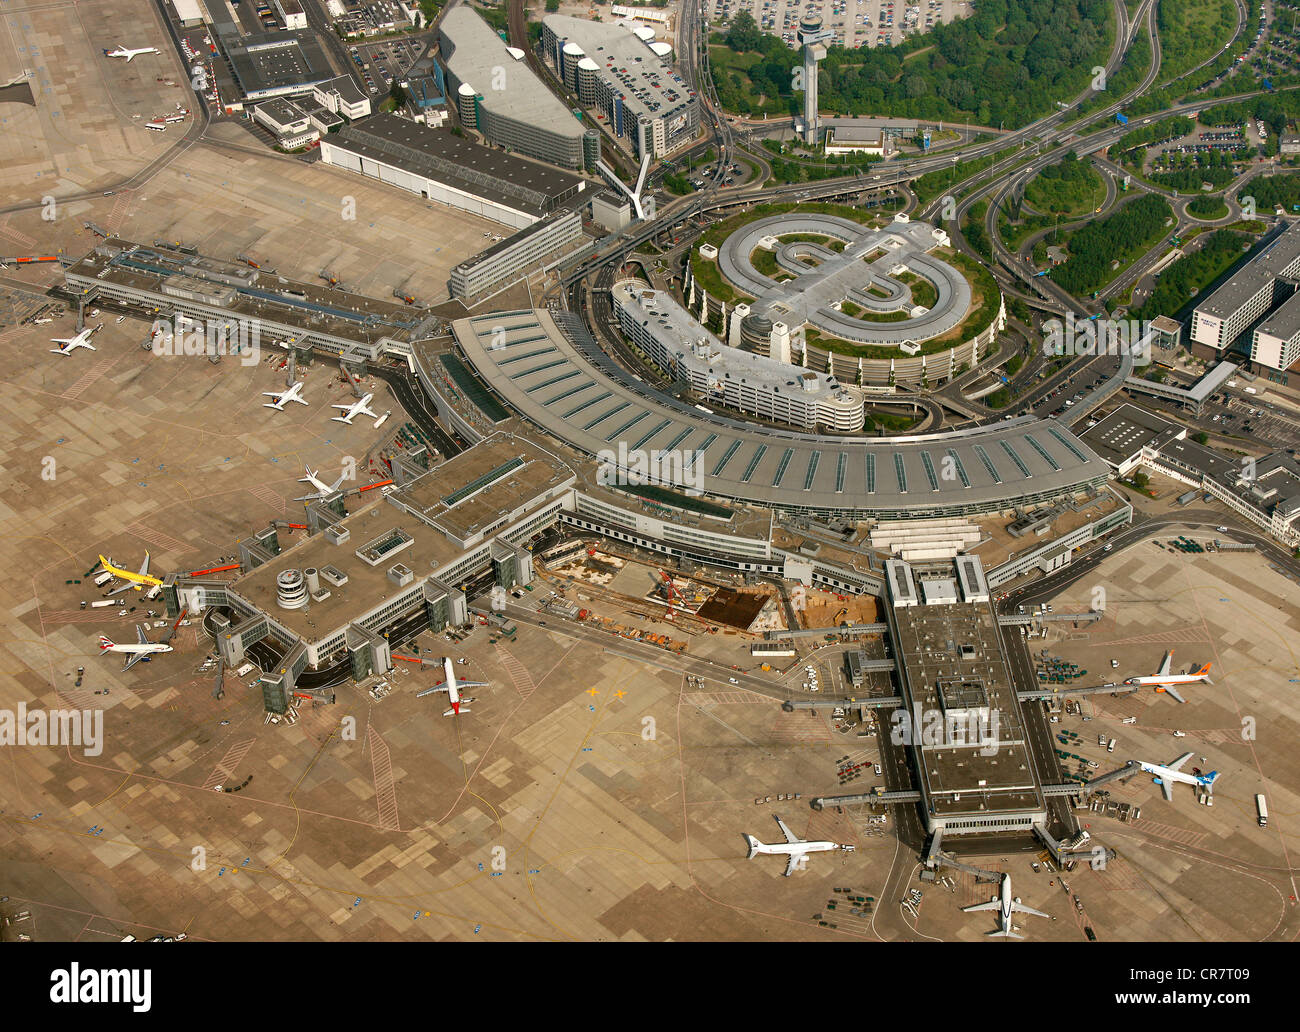 L'aéroport de Düsseldorf, vue aérienne, Nordrhein-Westfalen, Germany, Europe Banque D'Images